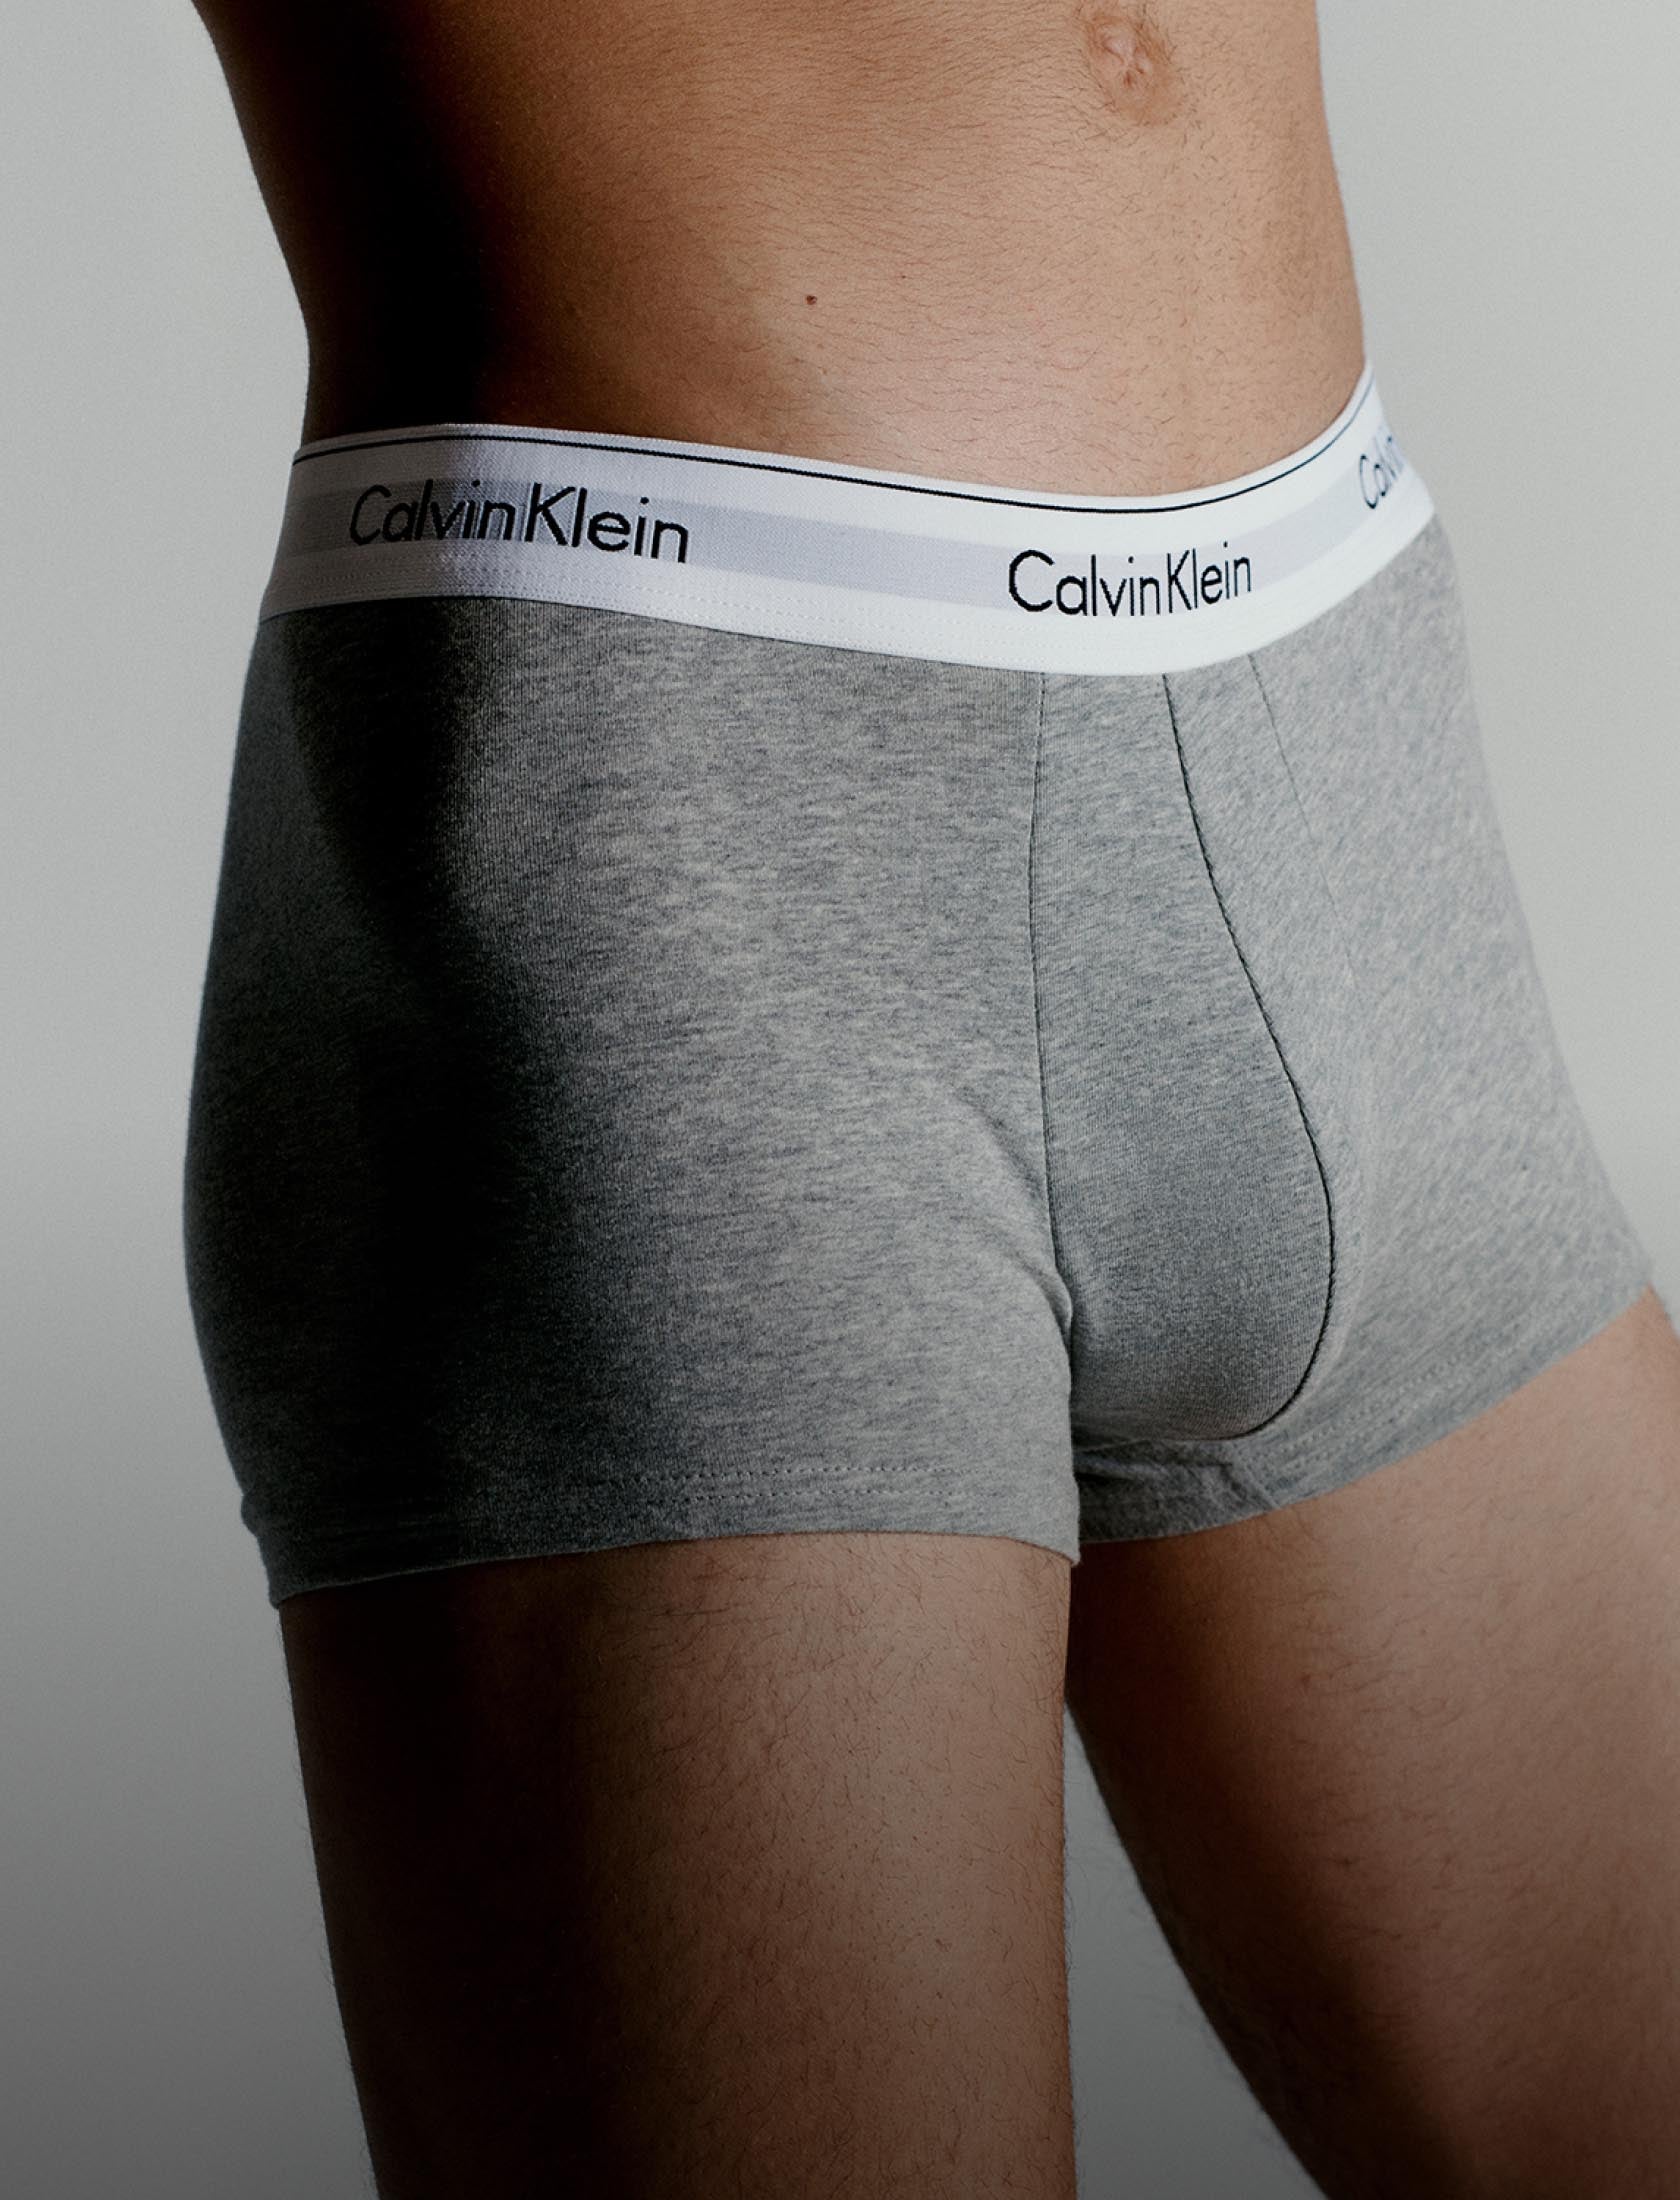 Calvin Klein - Modern Cotton is underwear designed to be